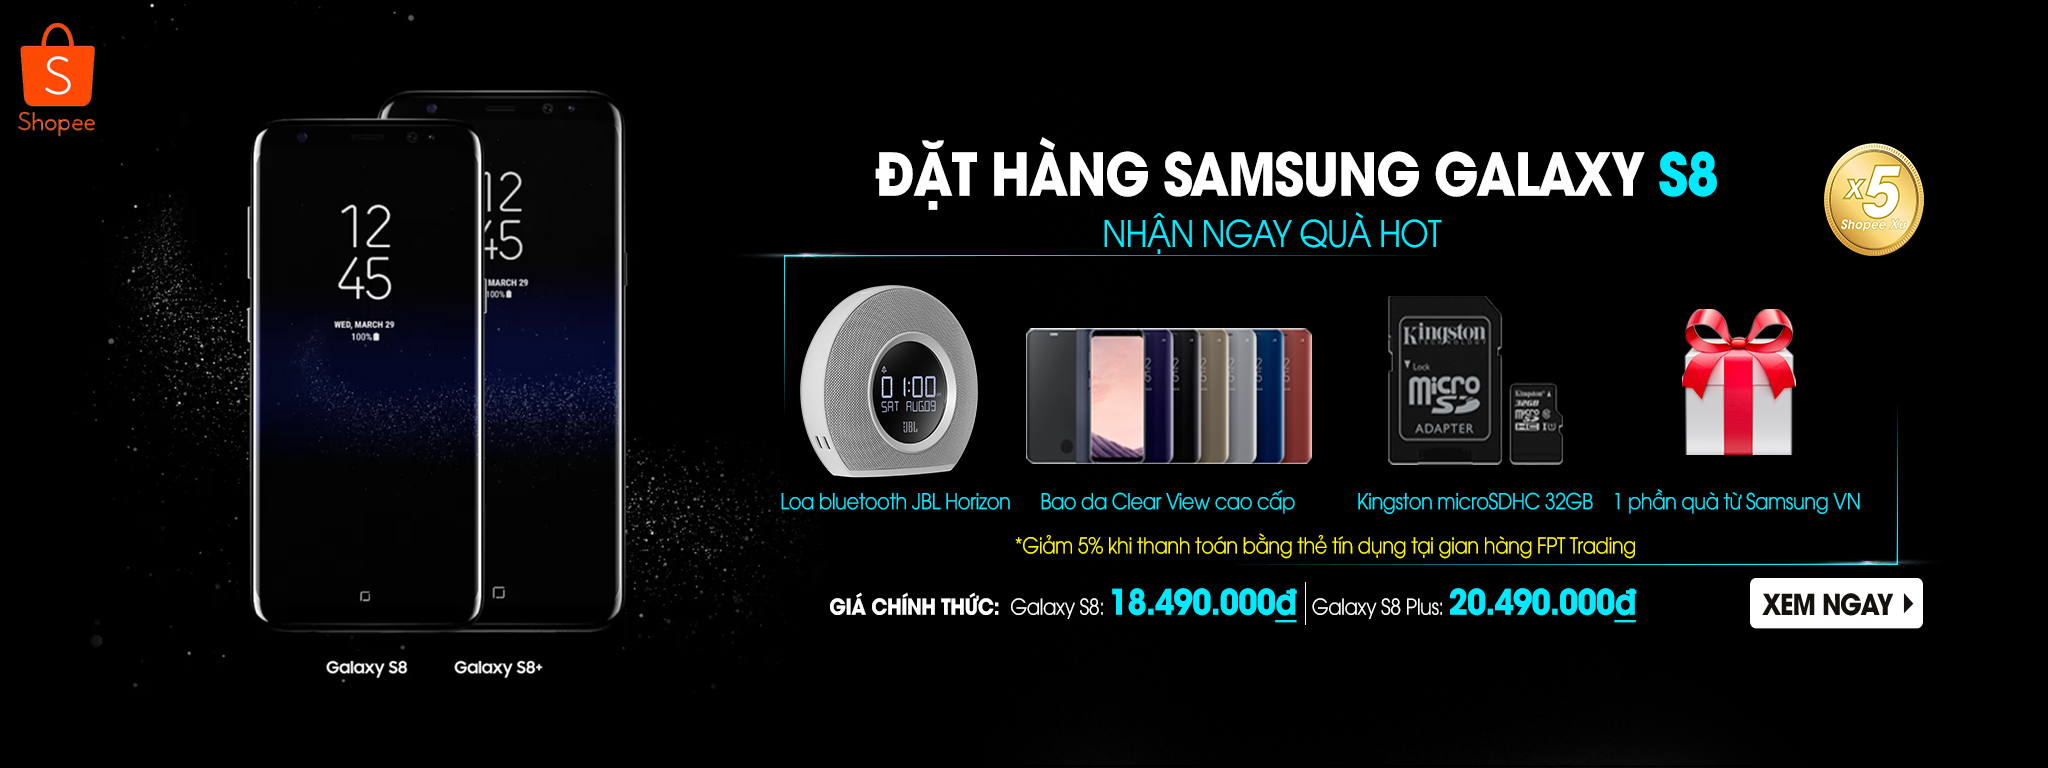 [QC] Đặt SamSung S8/8+ giao hàng trong 4 giờ, đặc quyền Samsung Elite cùng bộ quà 4 triệu đồng